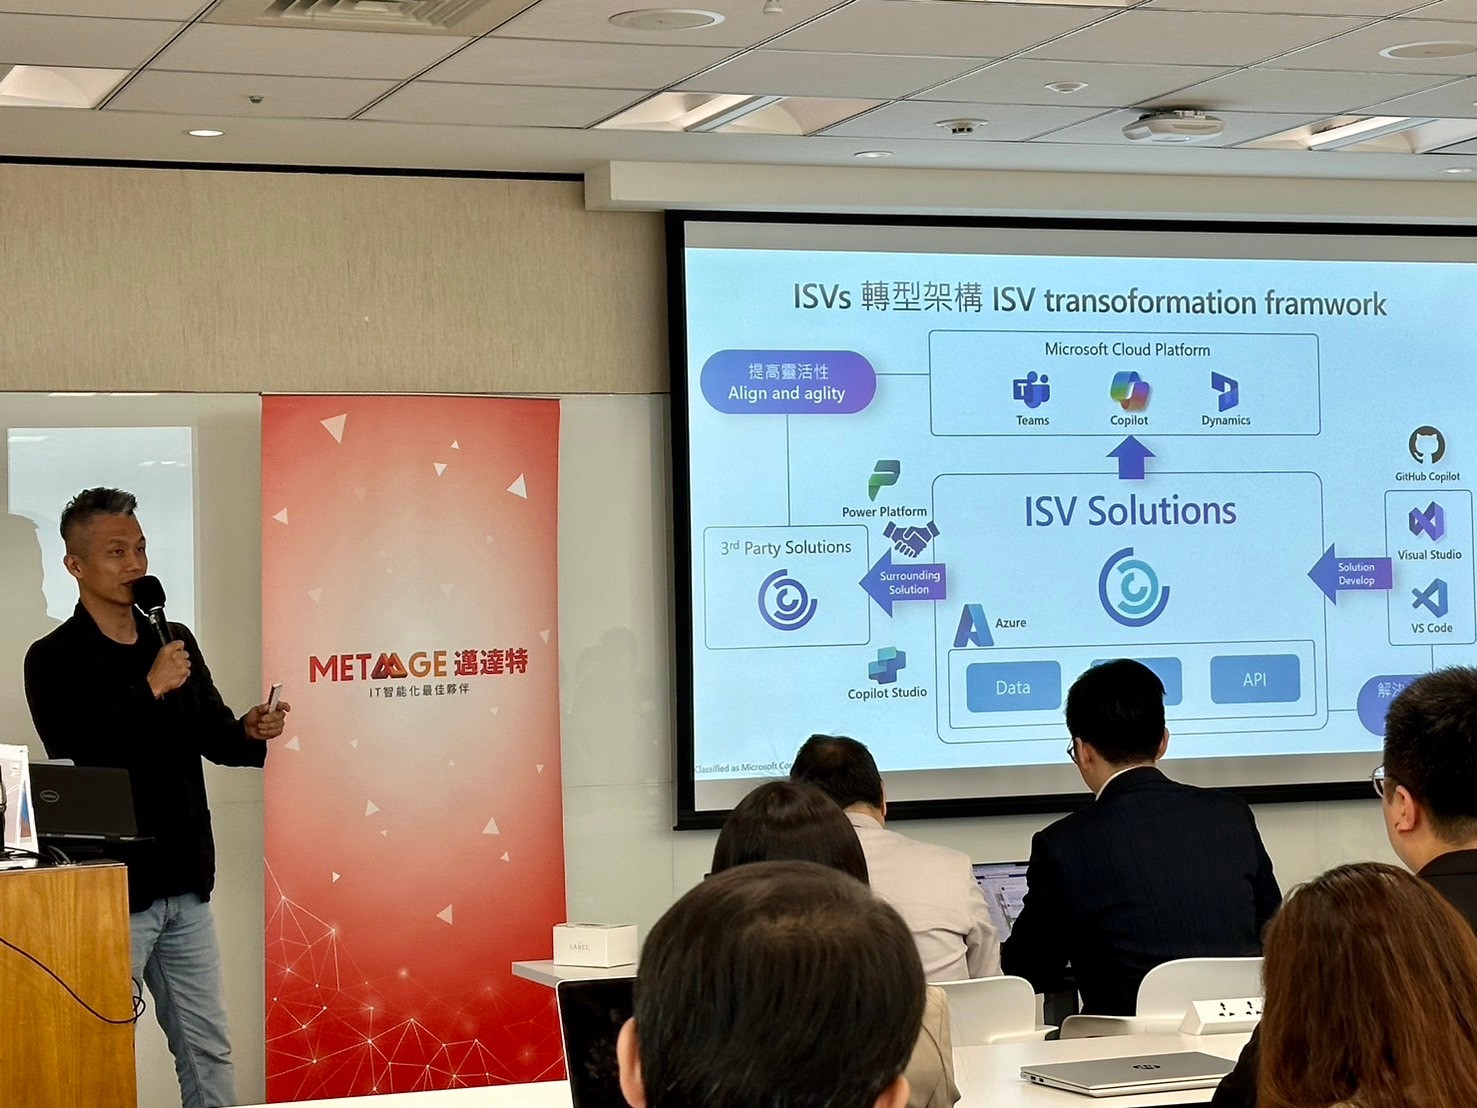 台灣微軟合作夥伴解決方案架構師 詹秉育 分享ISV產品轉型架構